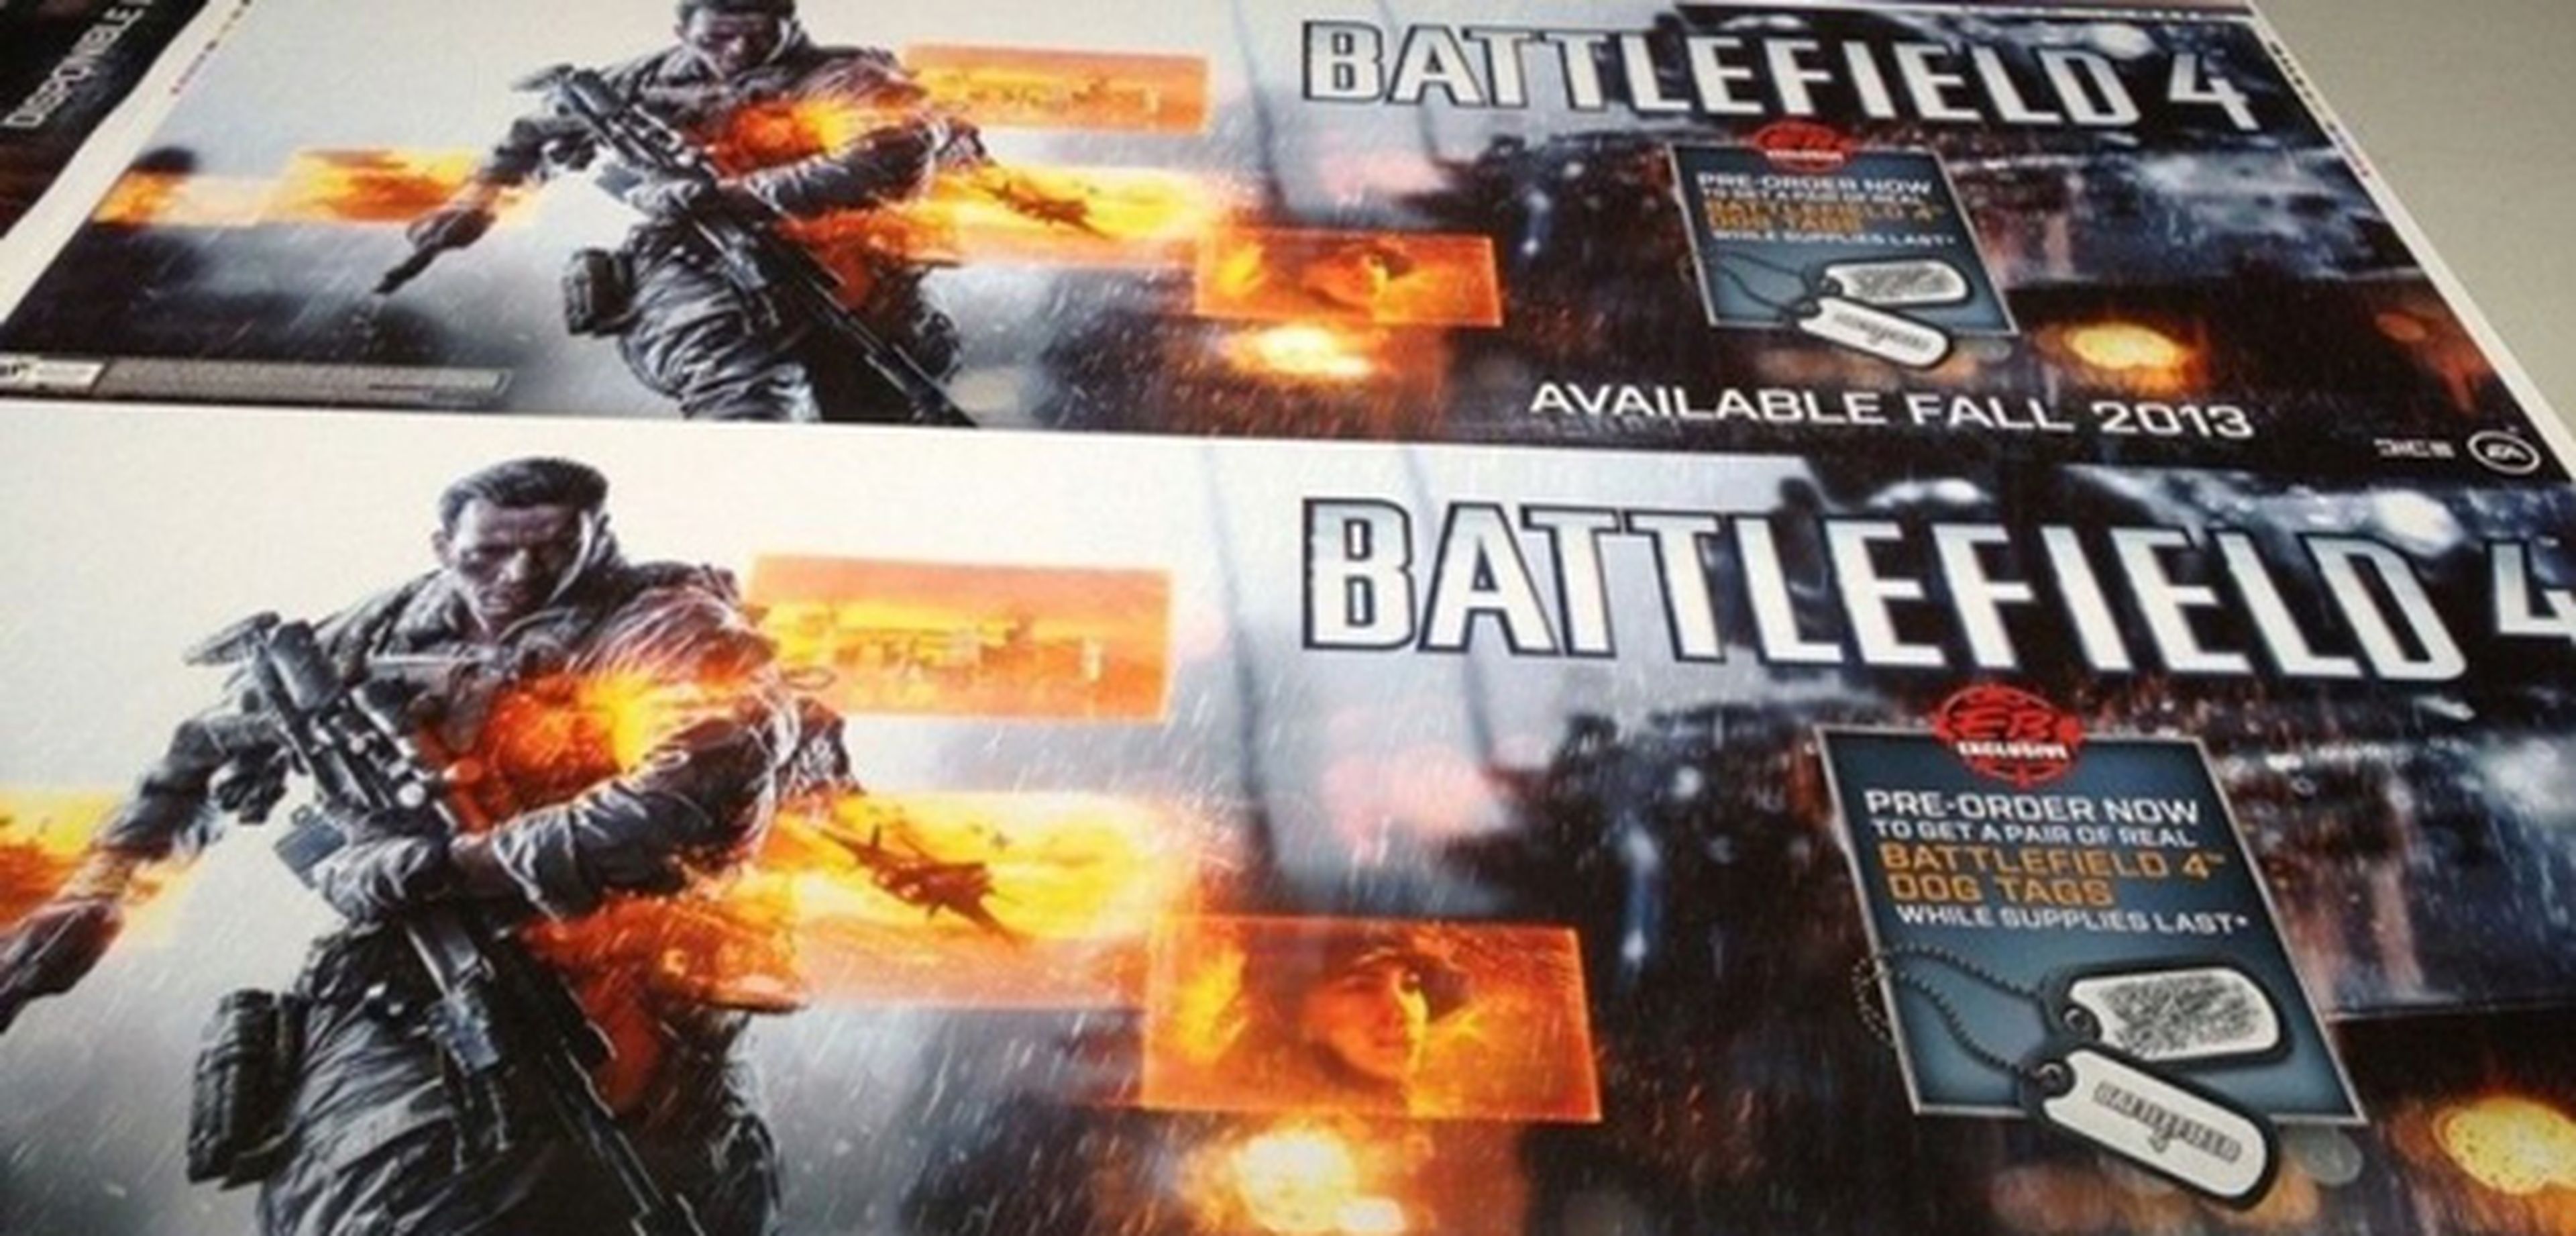 ¿Lanzamiento de Battlefield 4 en otoño?